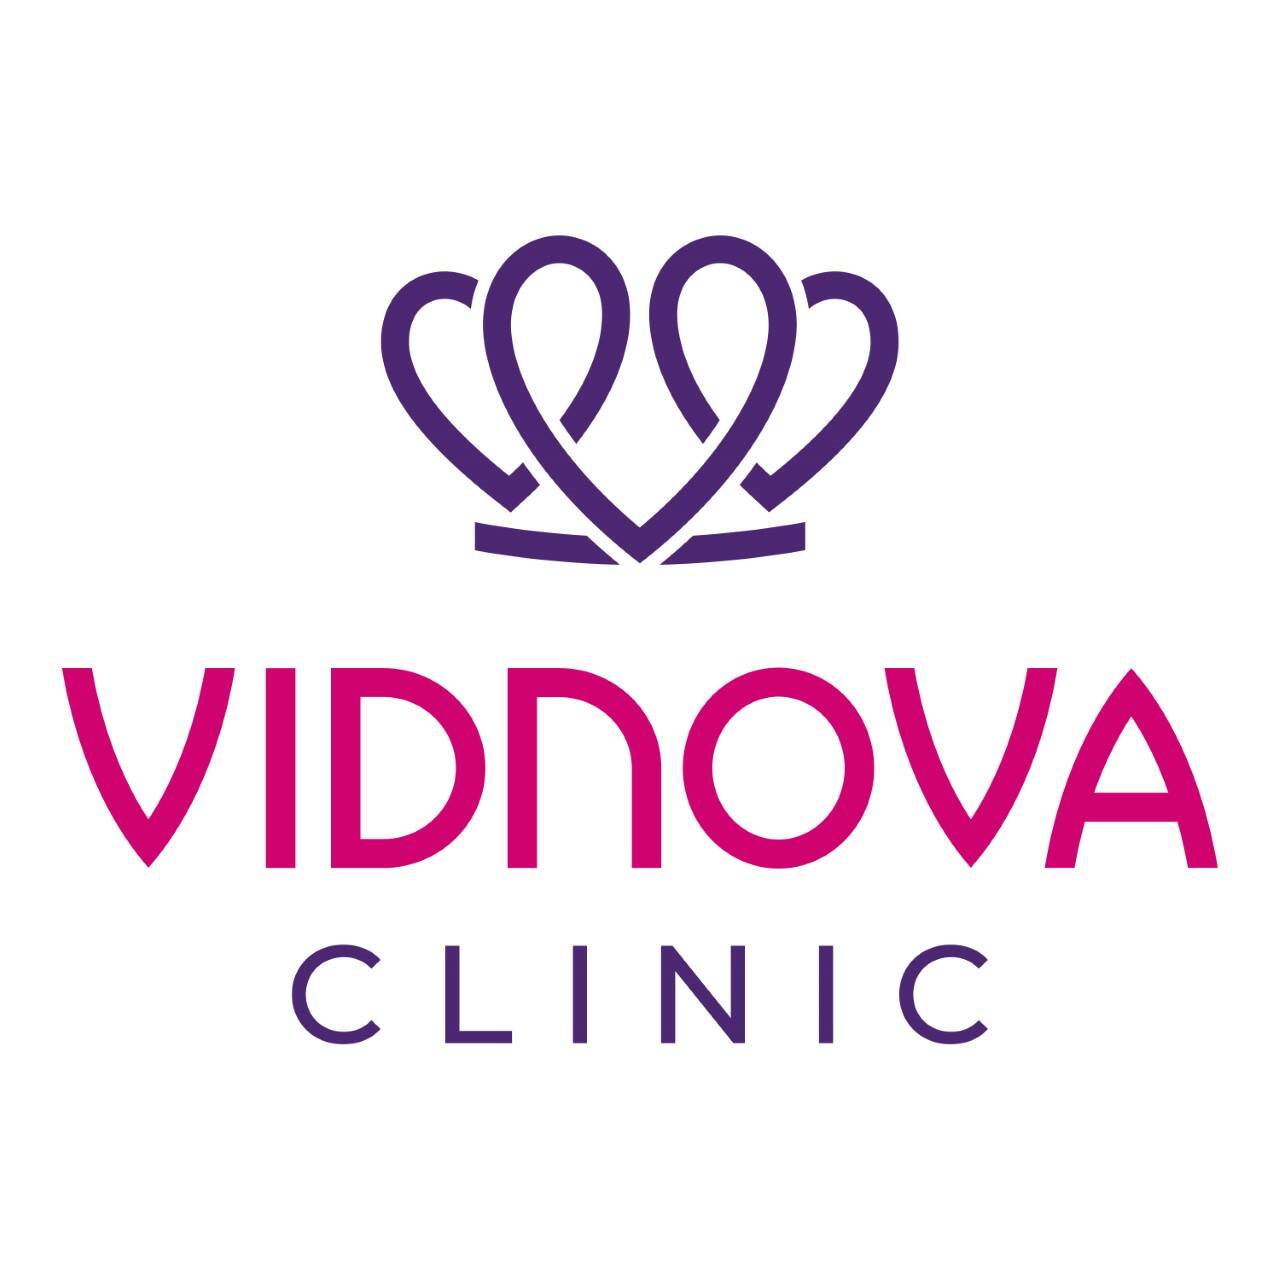  Vidnova Clinic (Клініка Віднова), мережа медичних центрів : опис, послуги, відгуки, рейтинг, контакти, записатися онлайн на сайті h24.ua